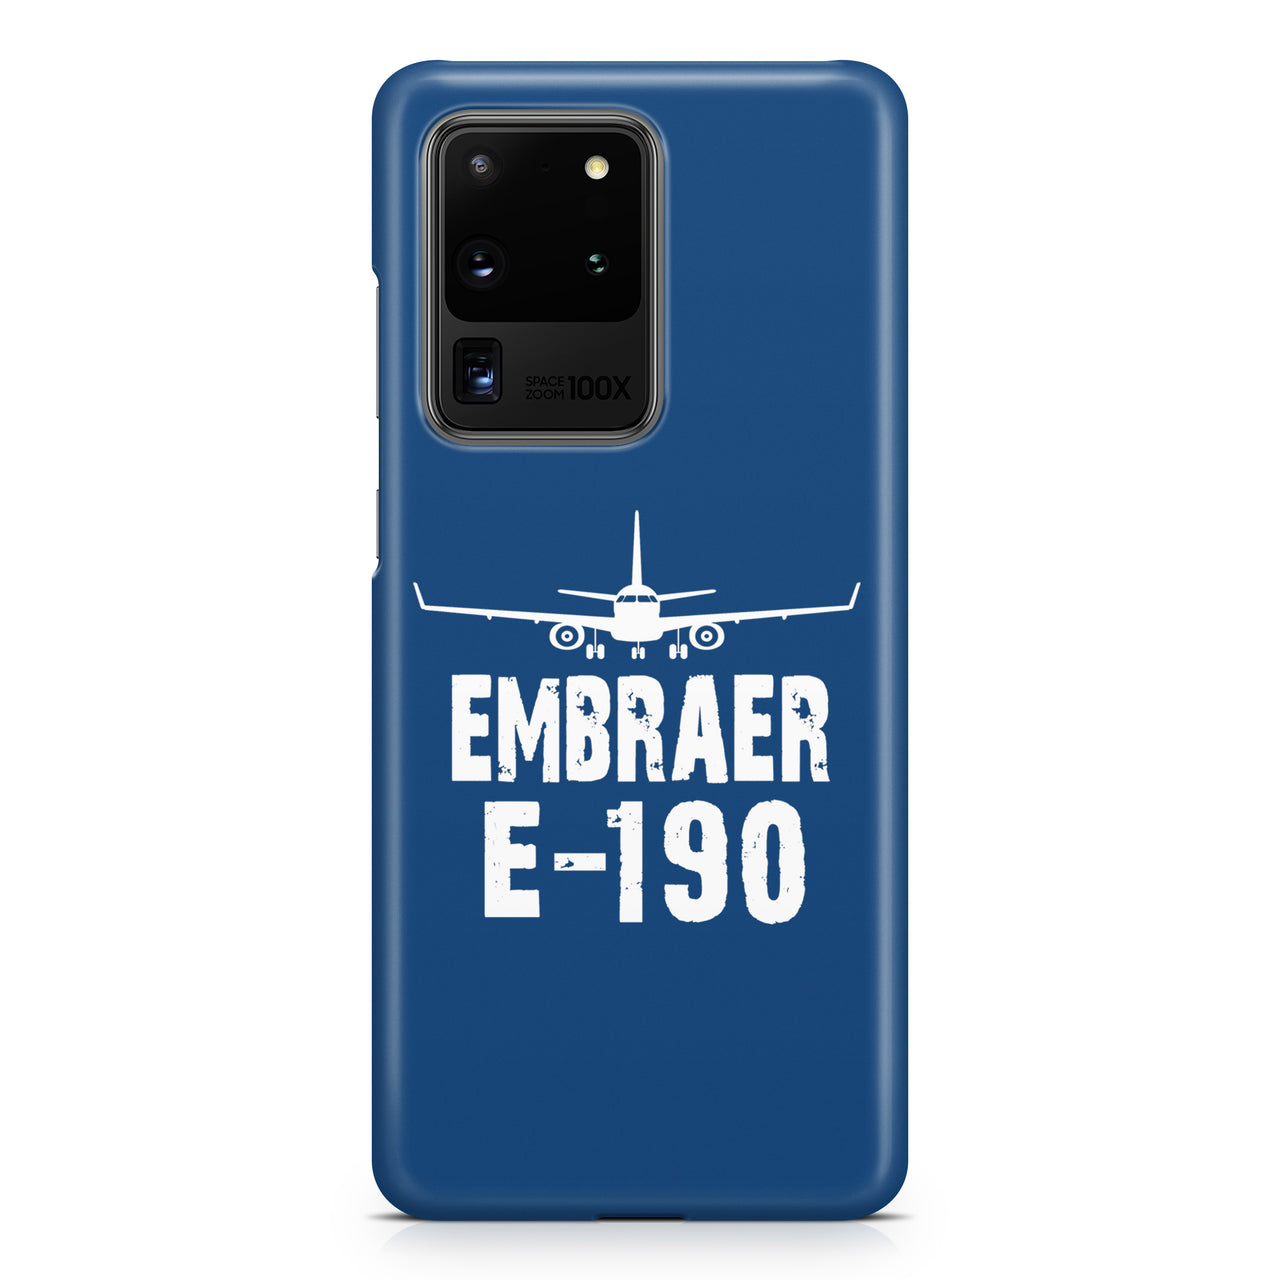 Embraer E-190 & Plane Samsung A Cases